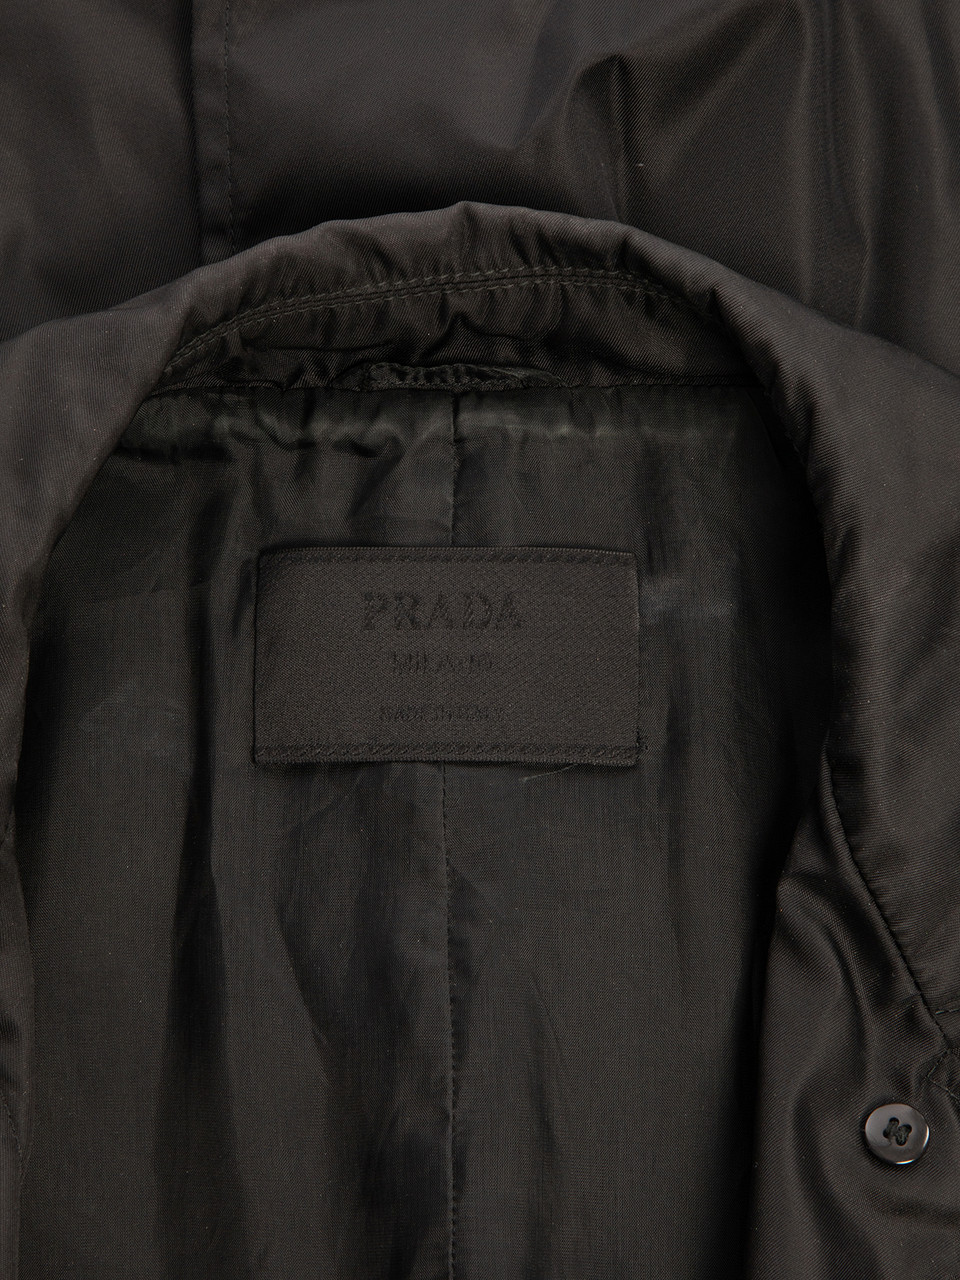 Prada Black Vintage Trench Coat